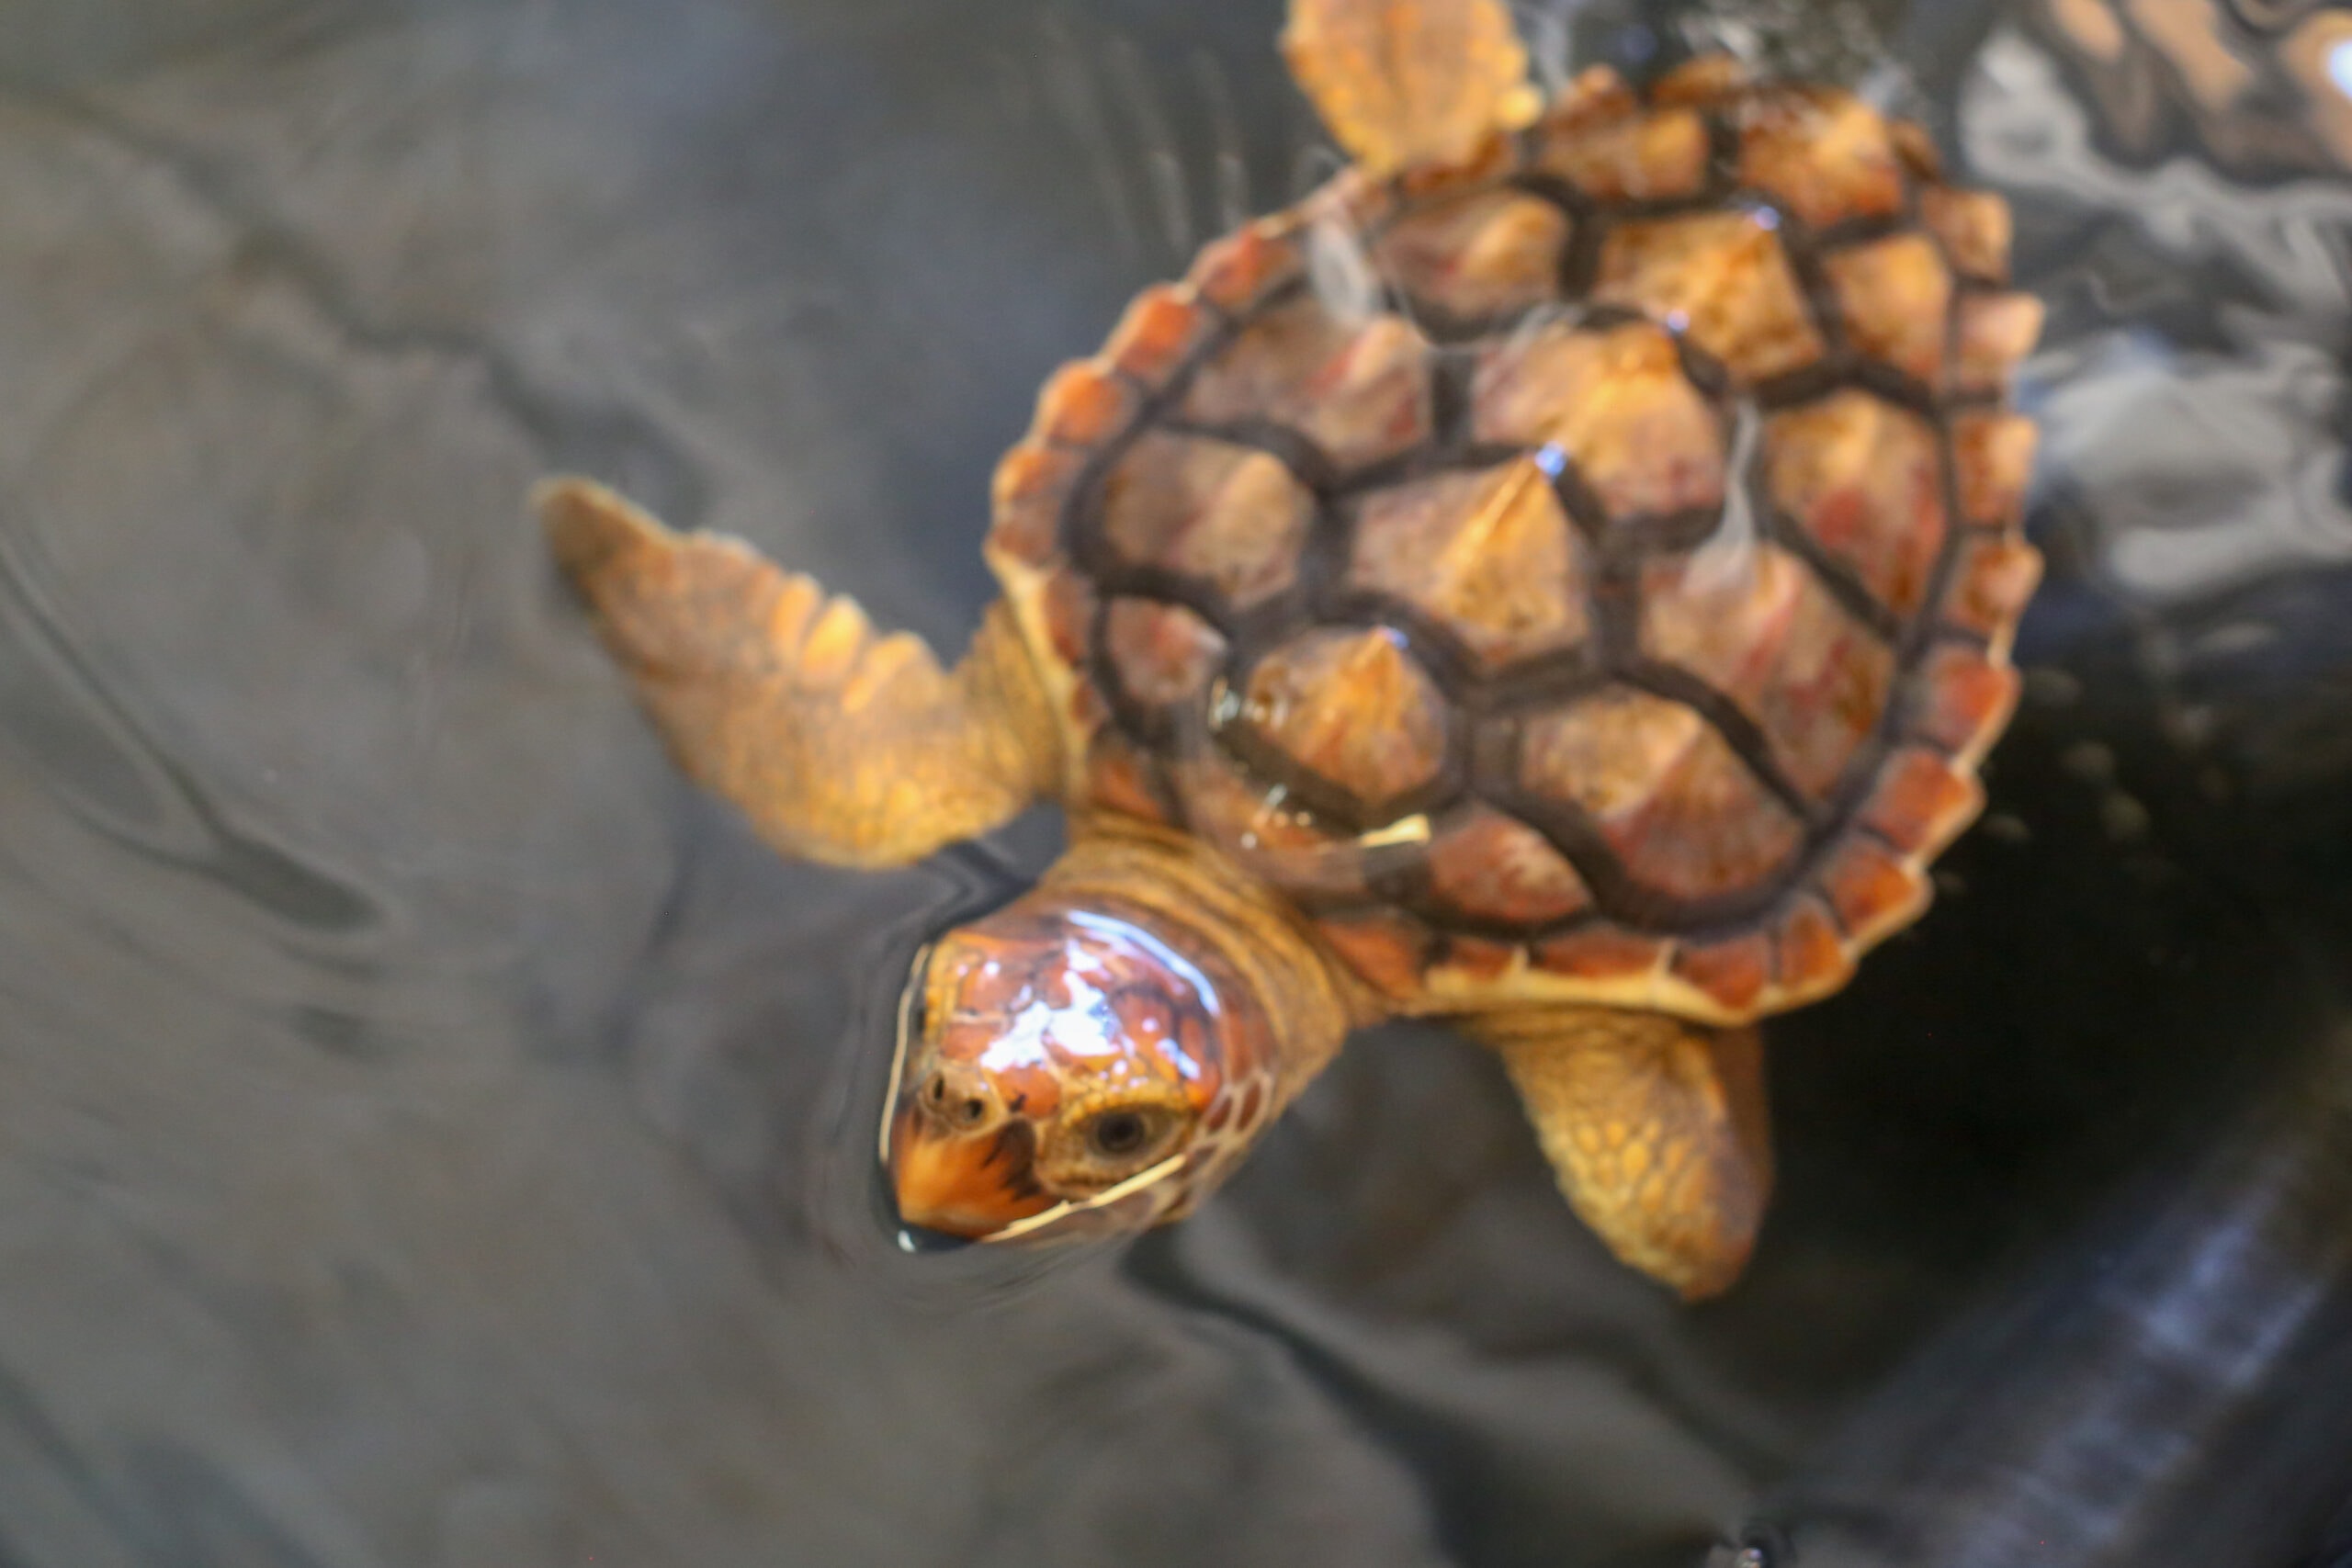 loggerhead turtle